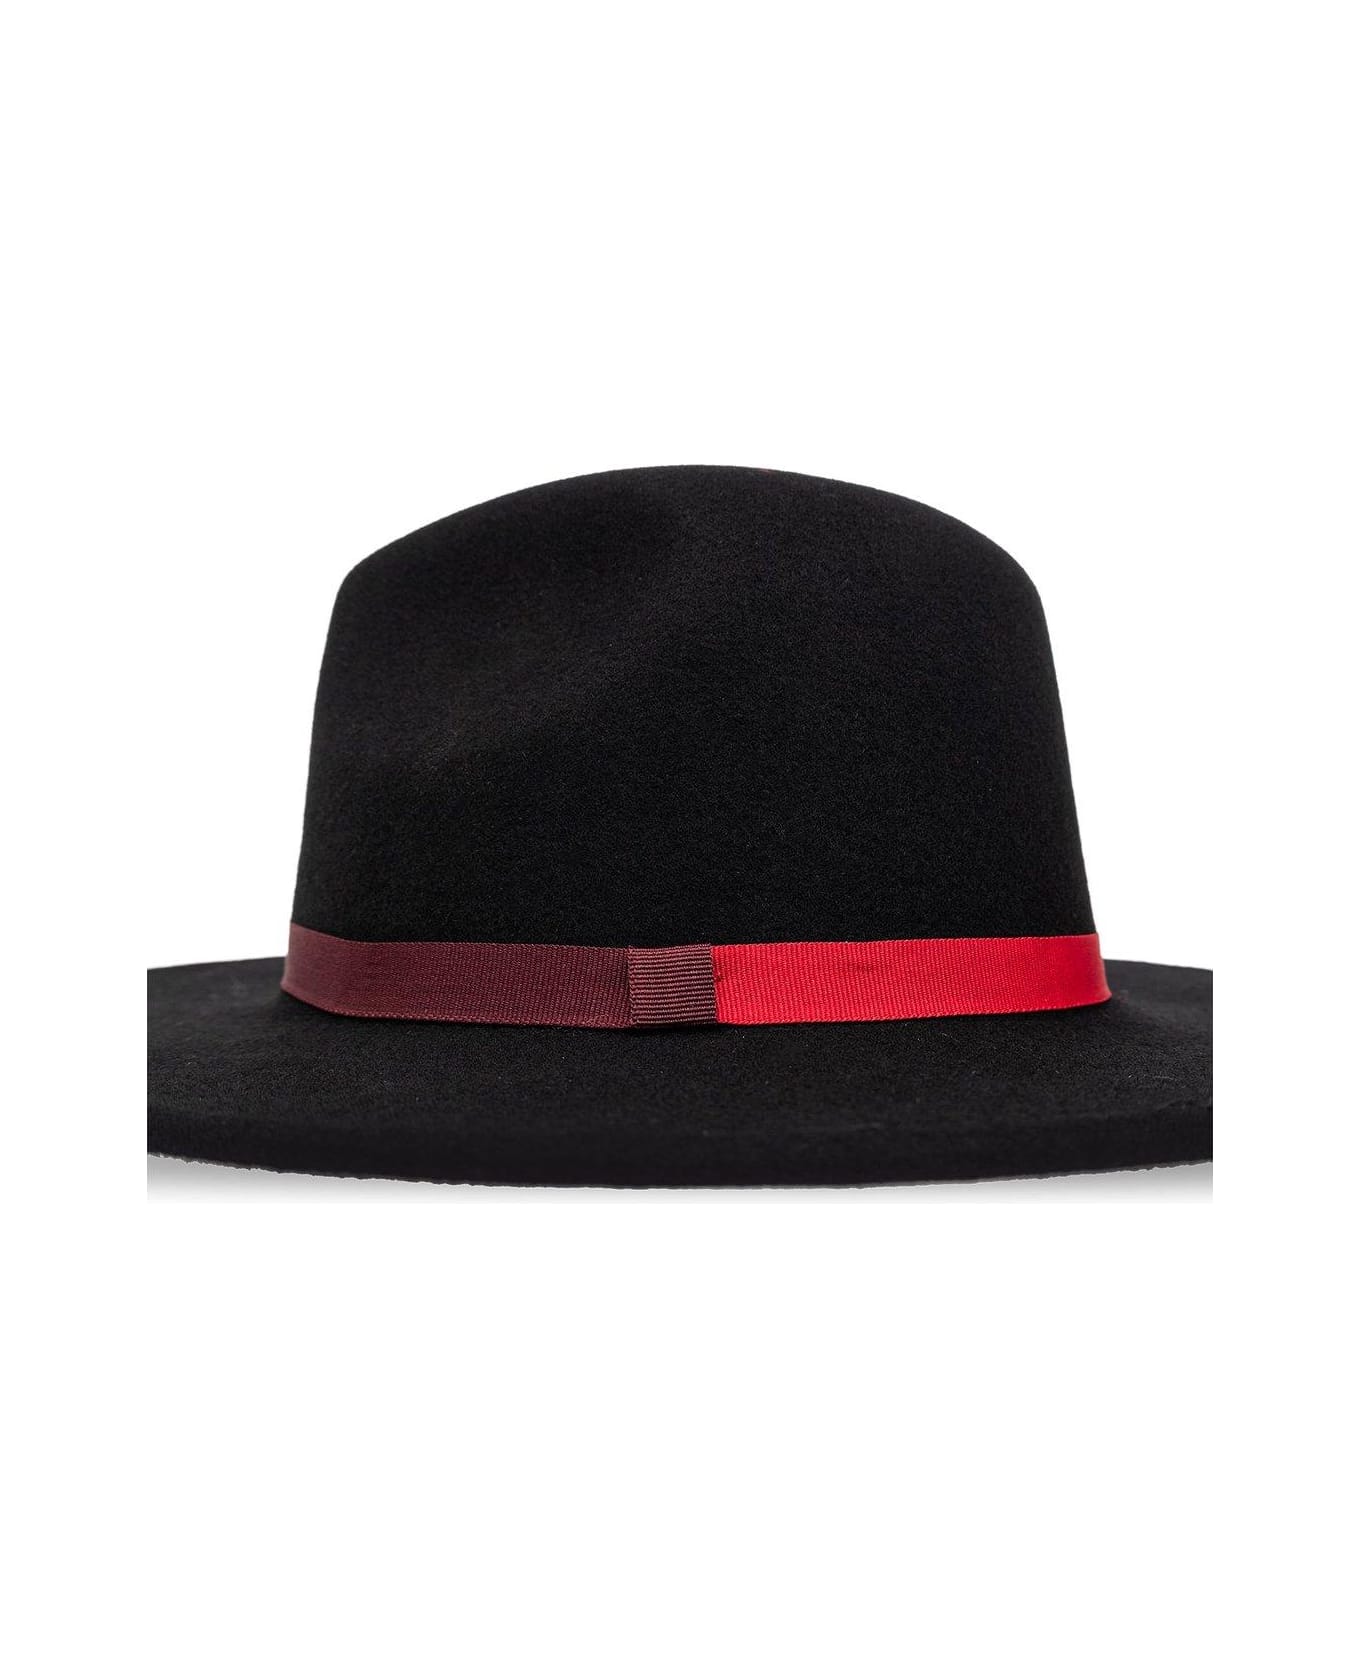 Paul Smith Wool Hat - Black